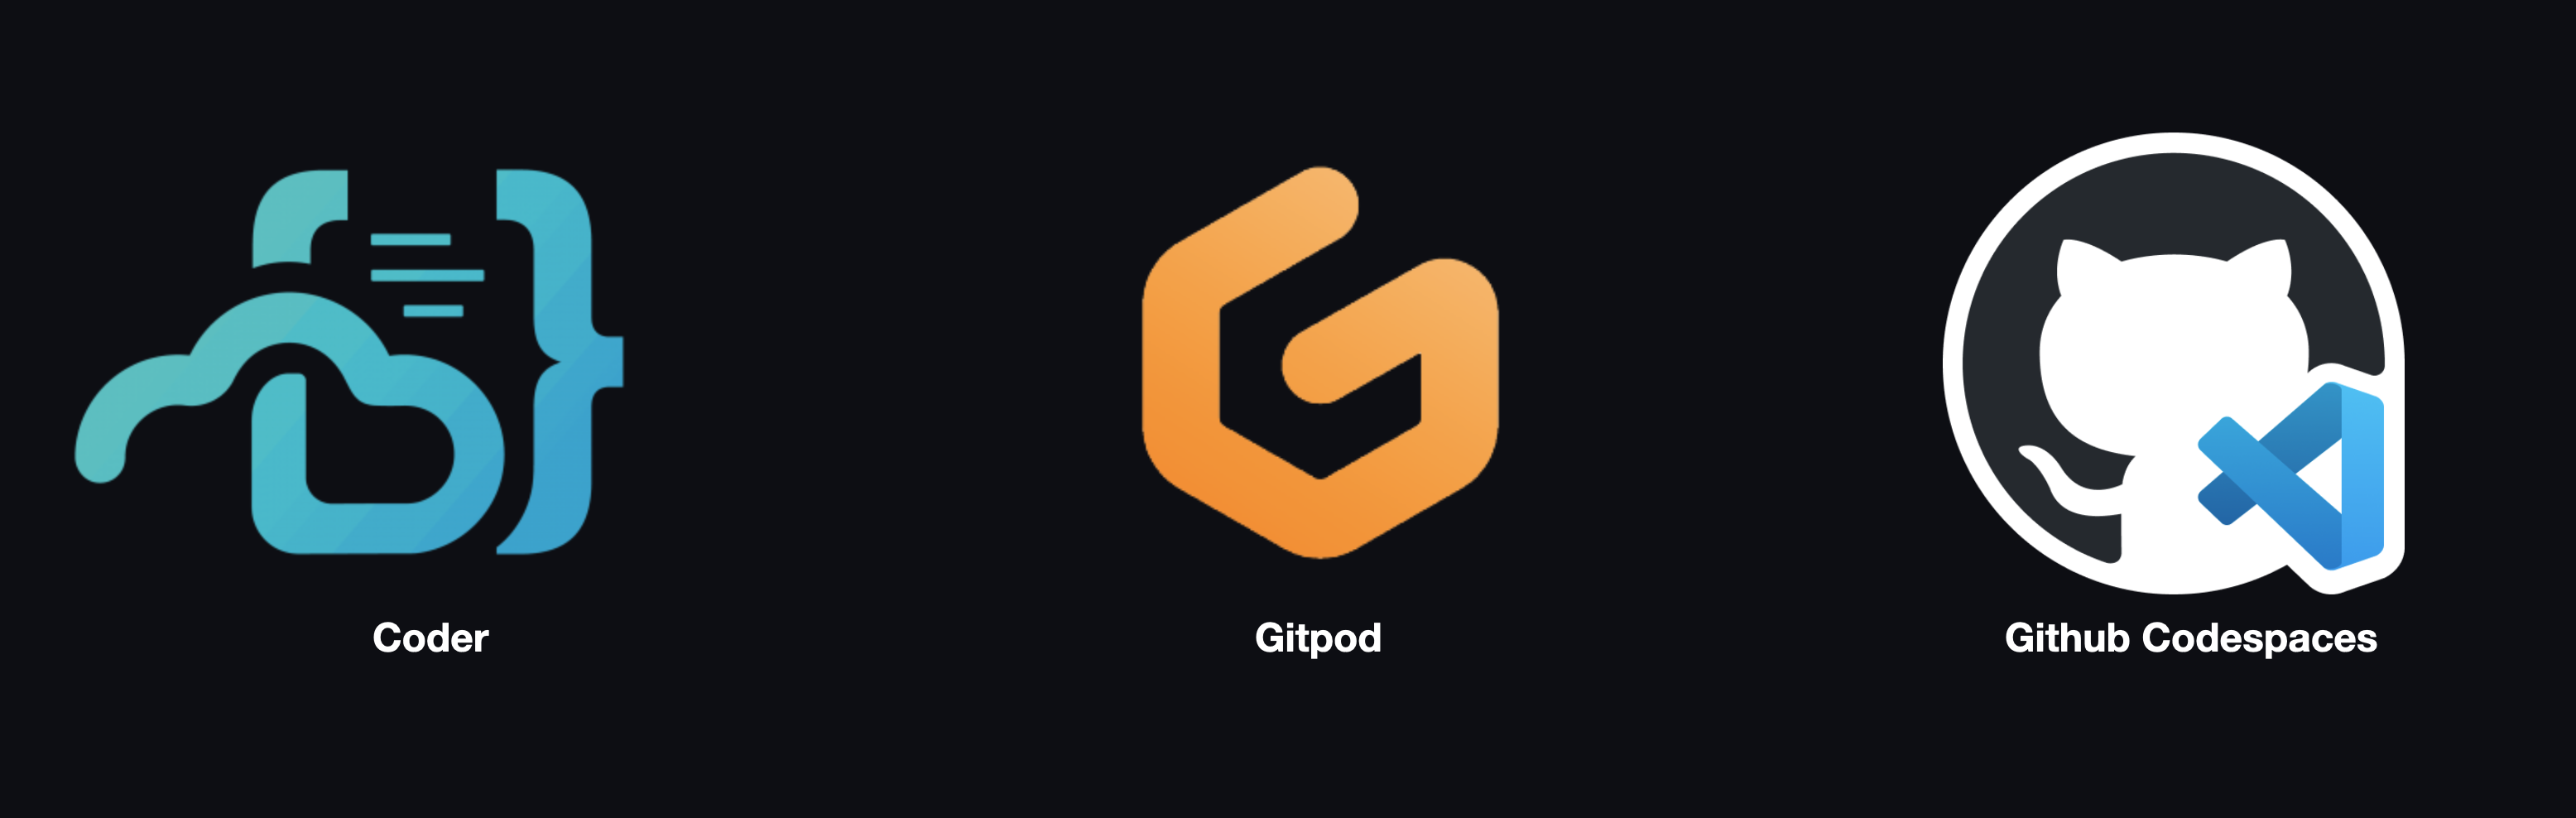 Logos for Coder, Gitpod, and GitHub Codespaces.